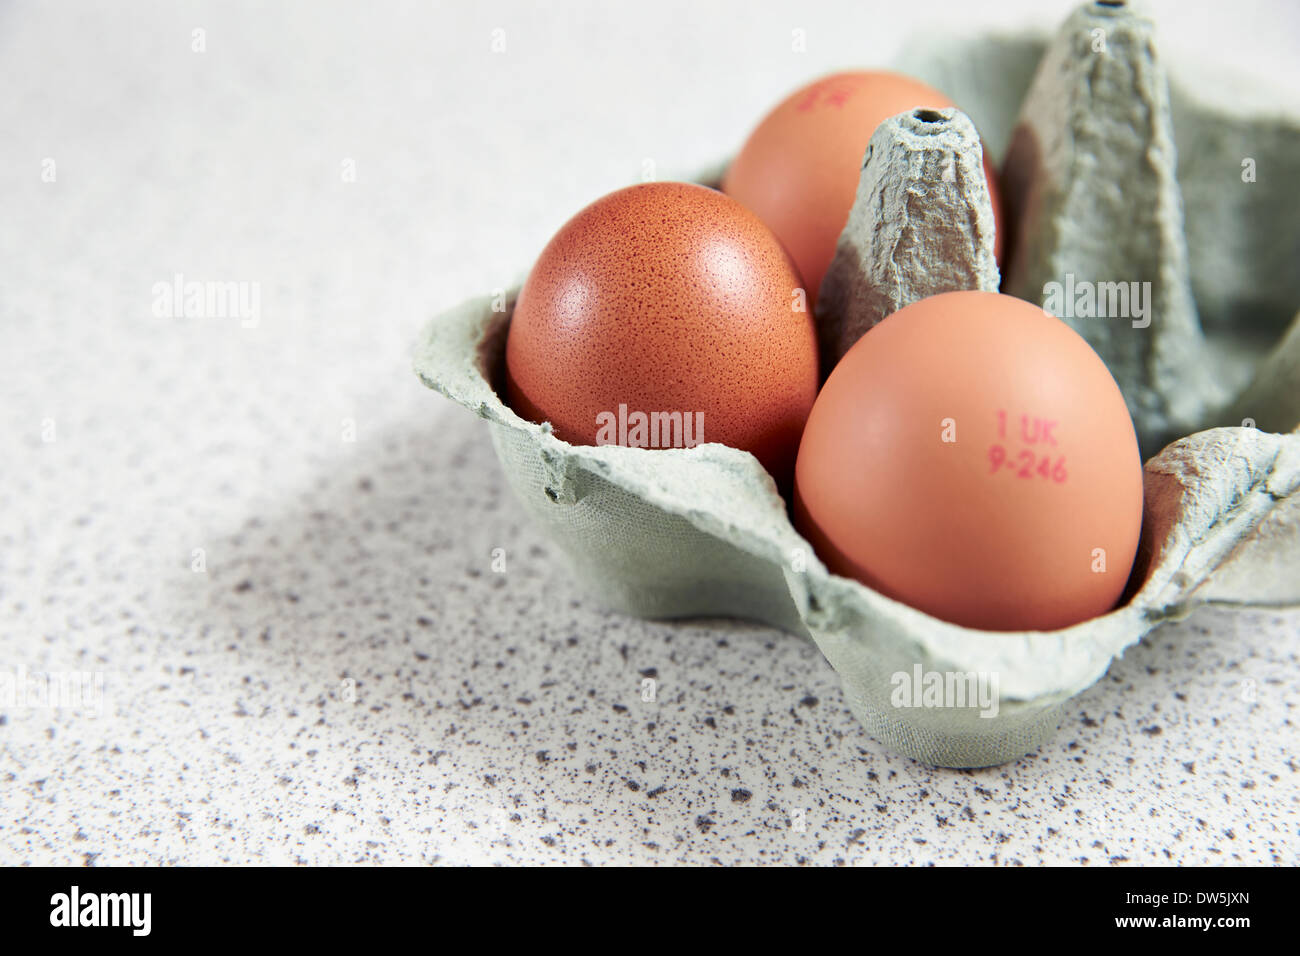 3 uova in una scatola per uova attendono la preparazione in cucina Foto Stock